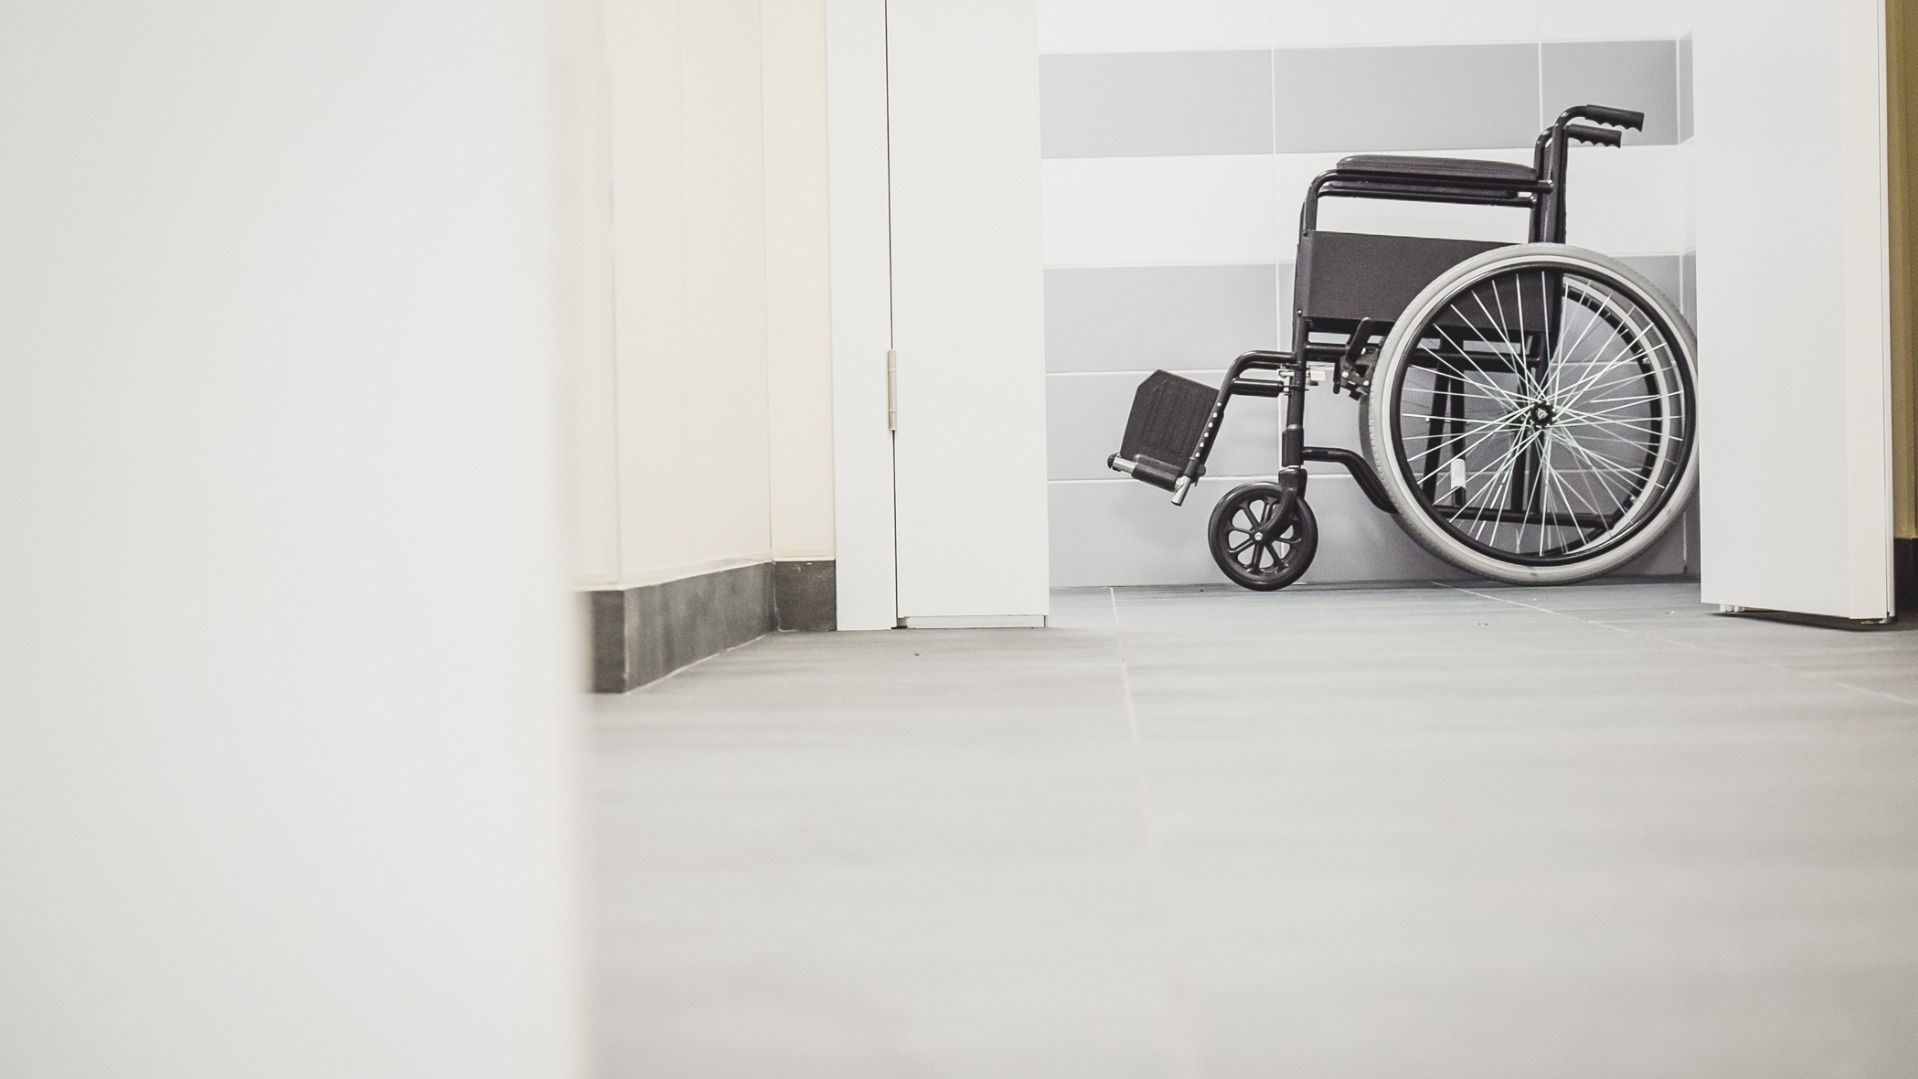 Ребенку с ДЦП в Екатеринбурге не выдавали инвалидную коляску два года